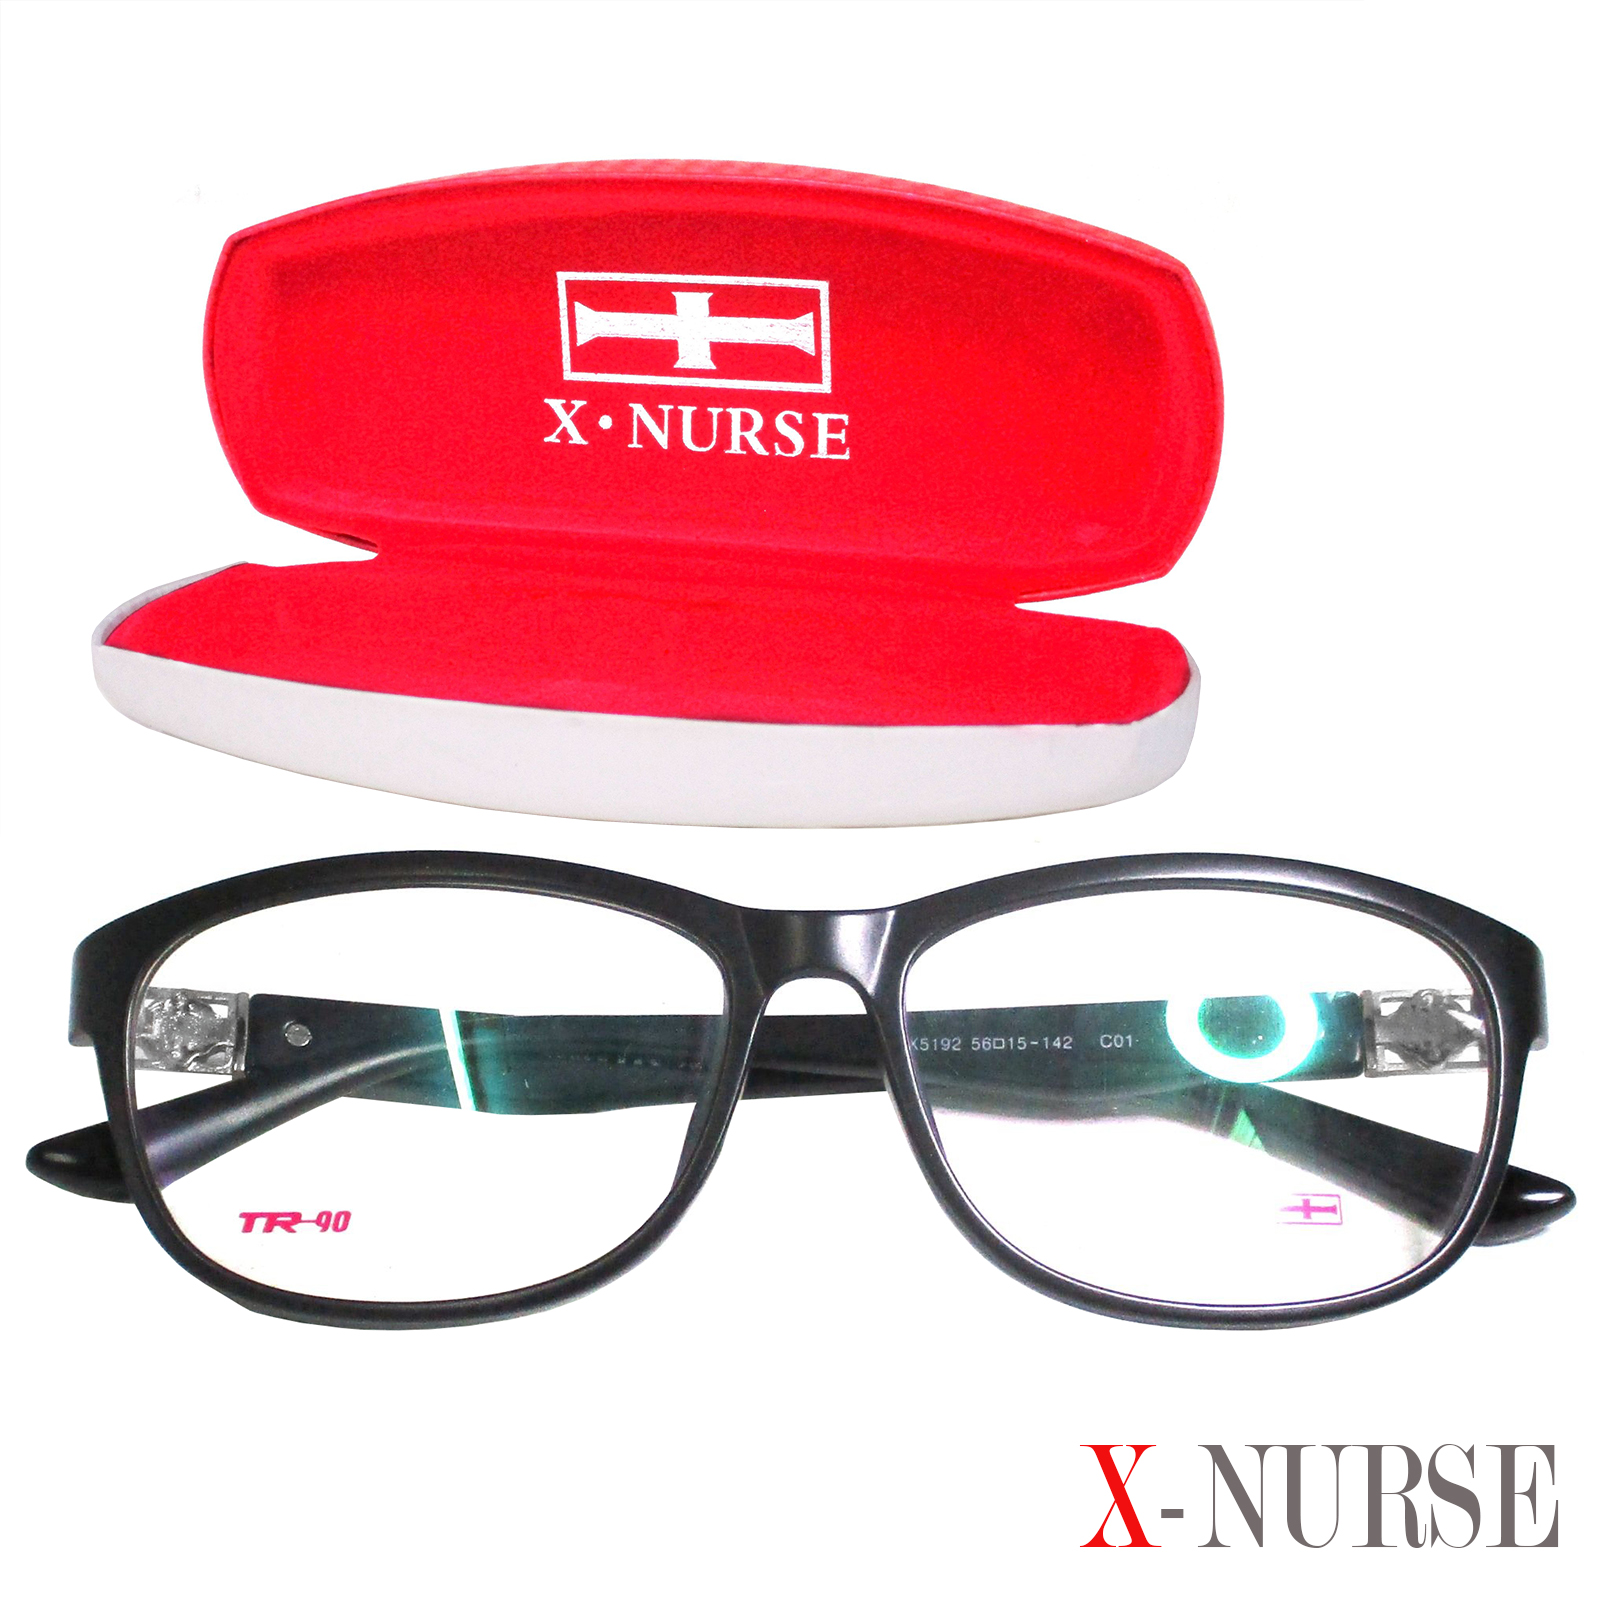 กรอบแว่นตา แว่นตาสำหรับตัดเลนส์ ผู้ชาย ผู้หญิง Fashion รุ่น X-Nurse 5192 C-1 สีดำ ทรงรี ขาข้อต่อ วัสดุ พลาสติก พีซี เกรด เอ รับตัดเลนส์สายตาเลนส์กันแดดทุกชนิด